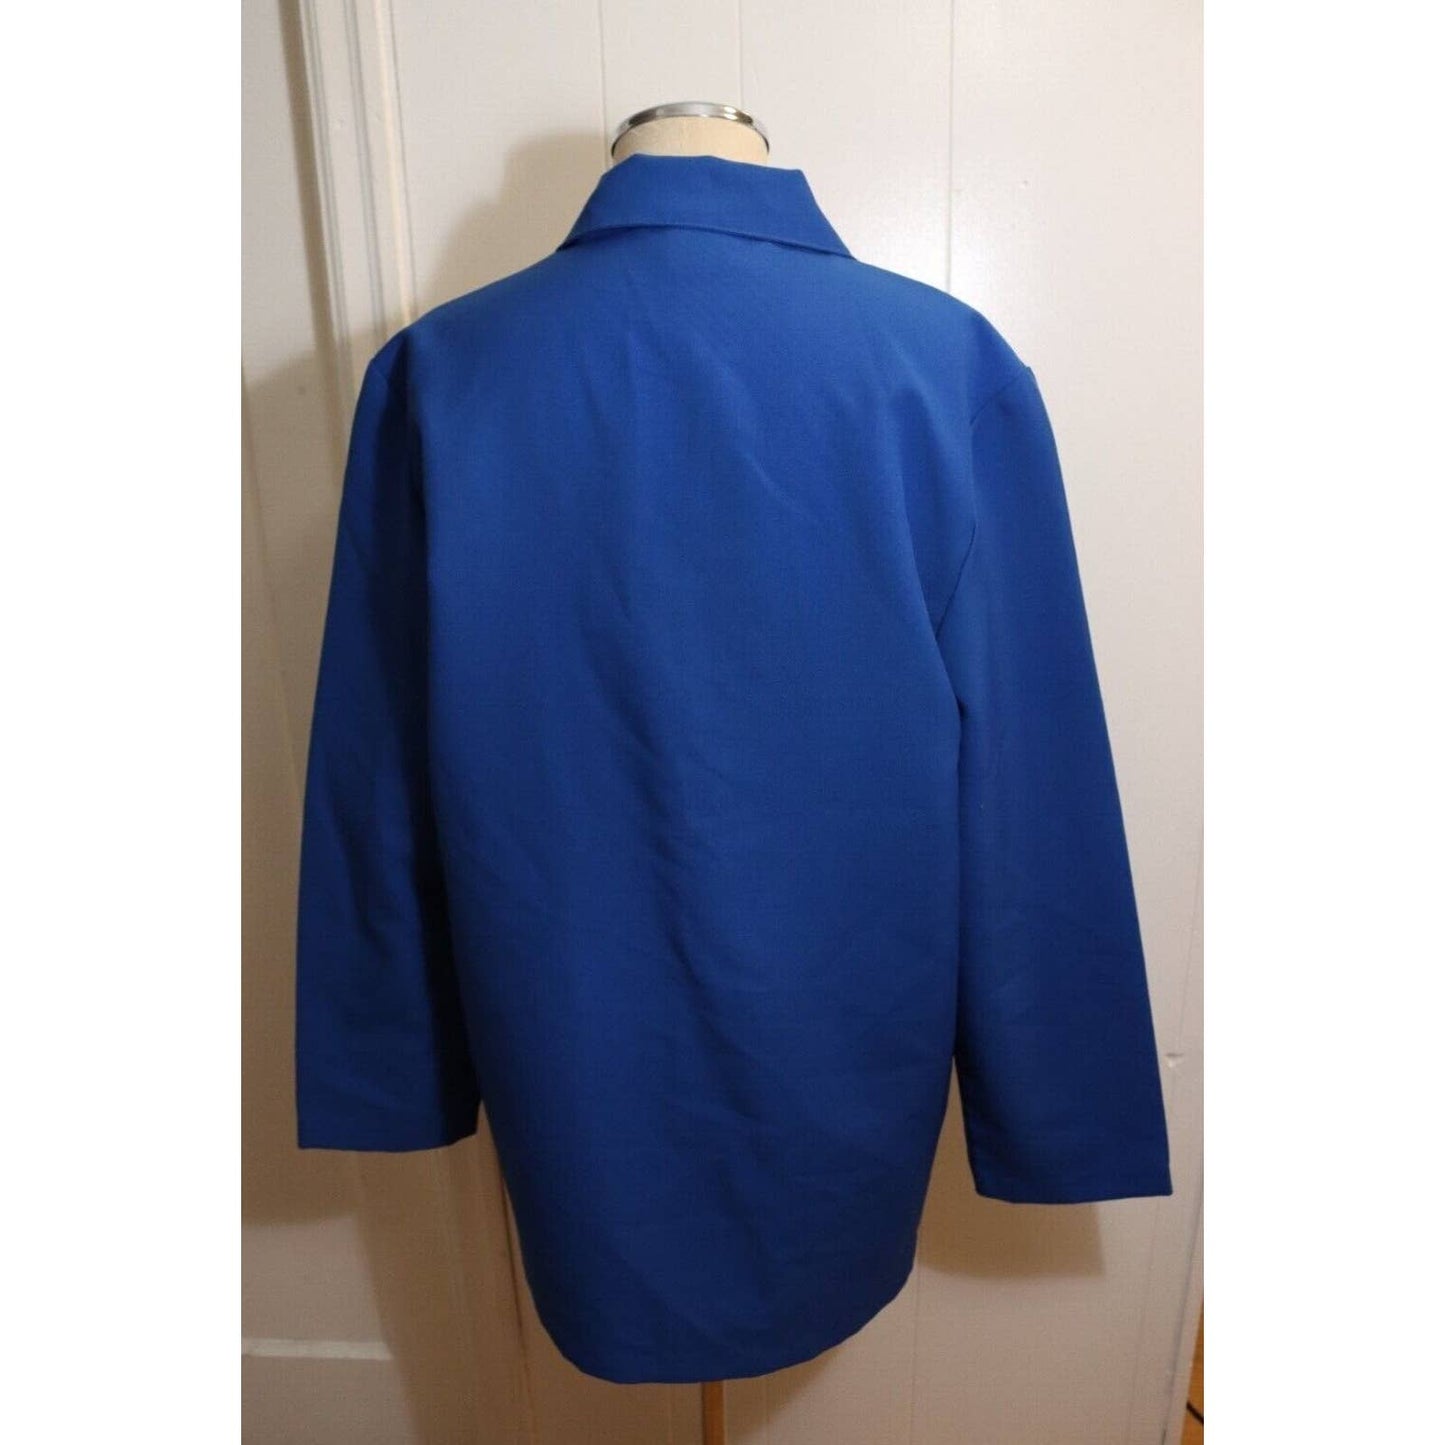 Blair Vintage Blue Blazer Size 12 Lightweight Made in USA